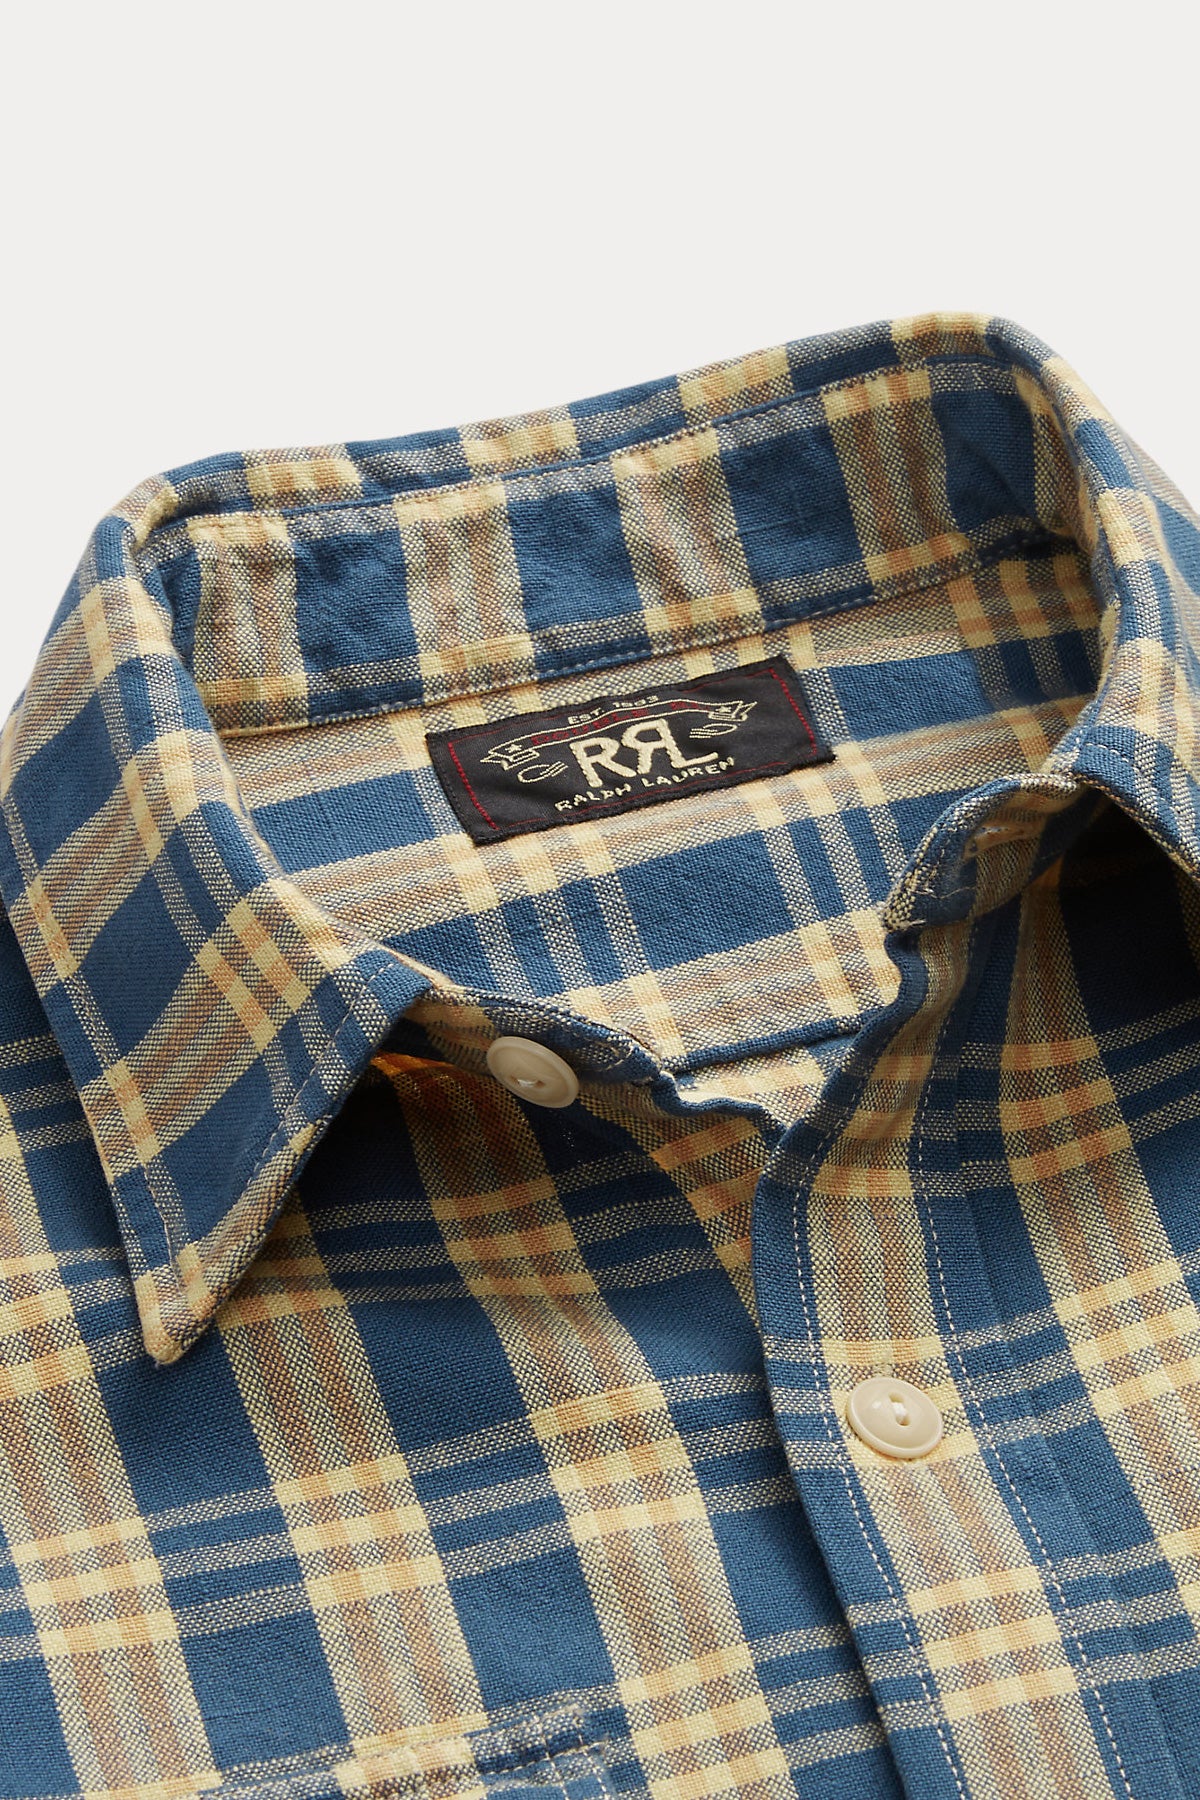 U03: Soft Blue, Carmel & Black Organic Flannel Plaid, 100% Cotton, 44  wide. $8.99 per half yard. - Islander Sewing